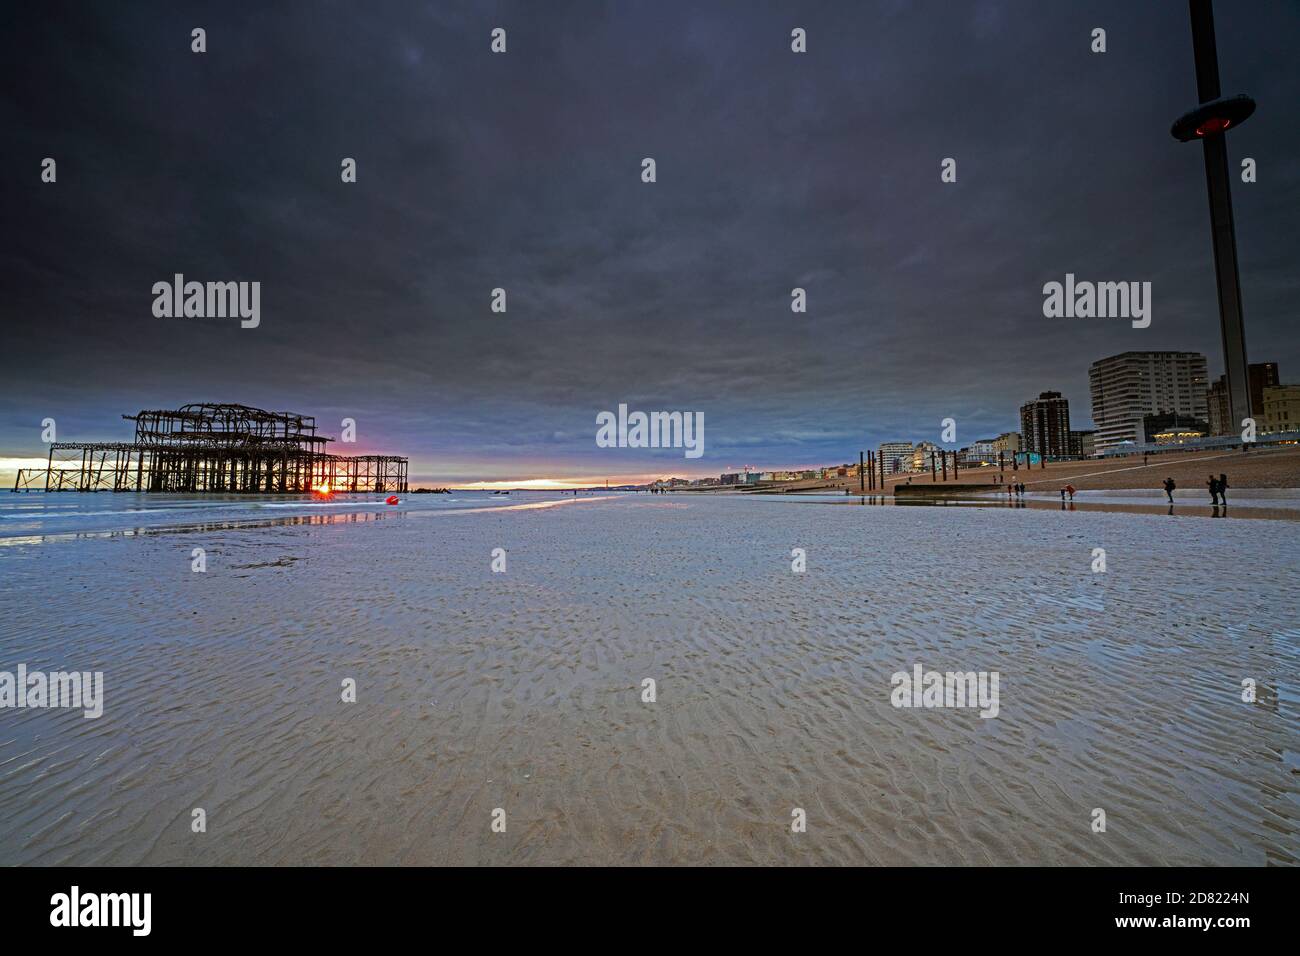 West Pier et l'i360 au coucher du soleil, Brighton, Hove, East Sussex, Angleterre, Royaume-Uni, GB Banque D'Images